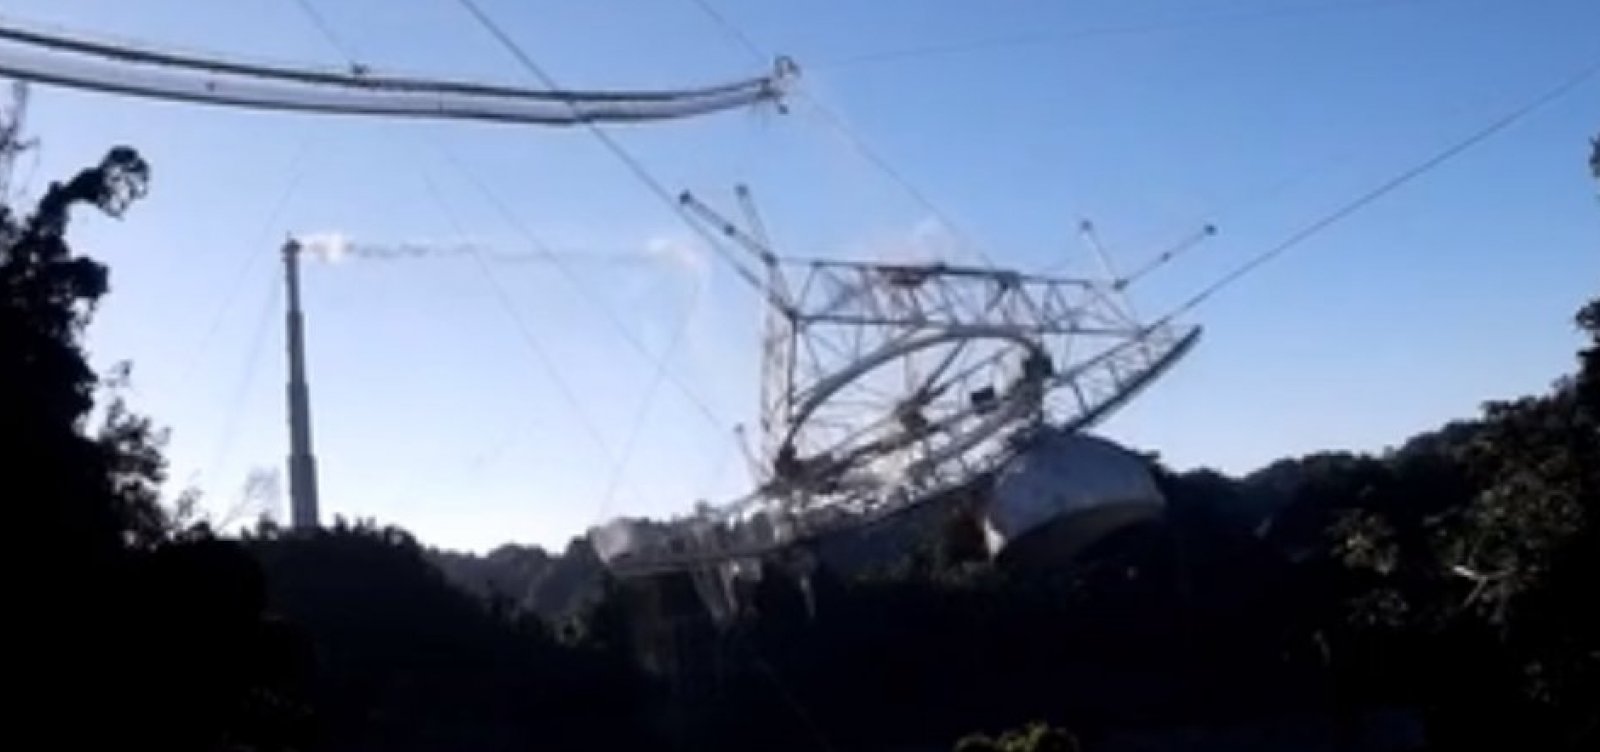 Telescópio de Arecibo desaba e fica destruído em Porto Rico; veja vídeo 